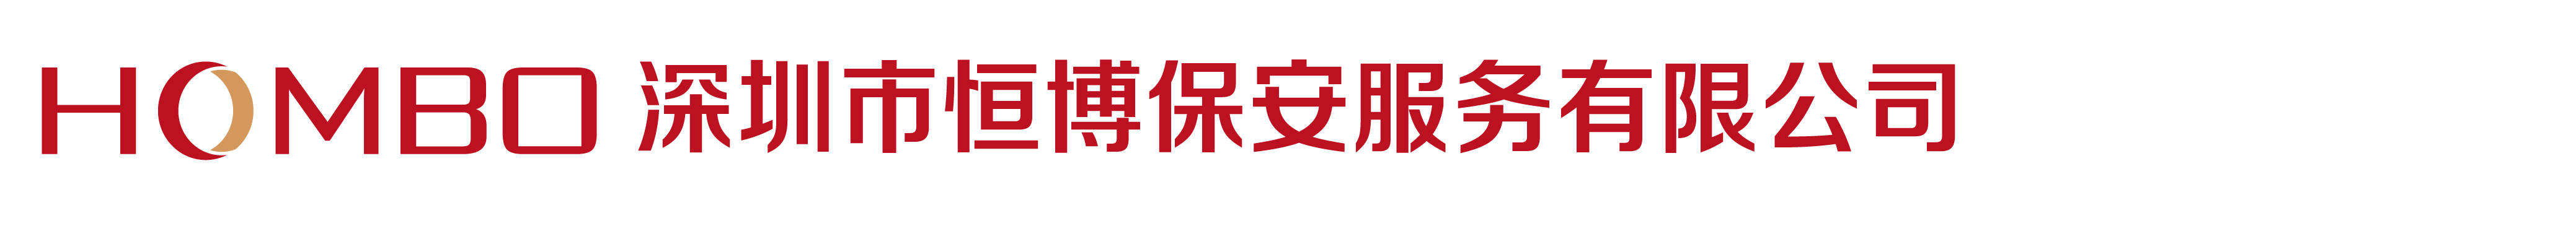 安保官网logo